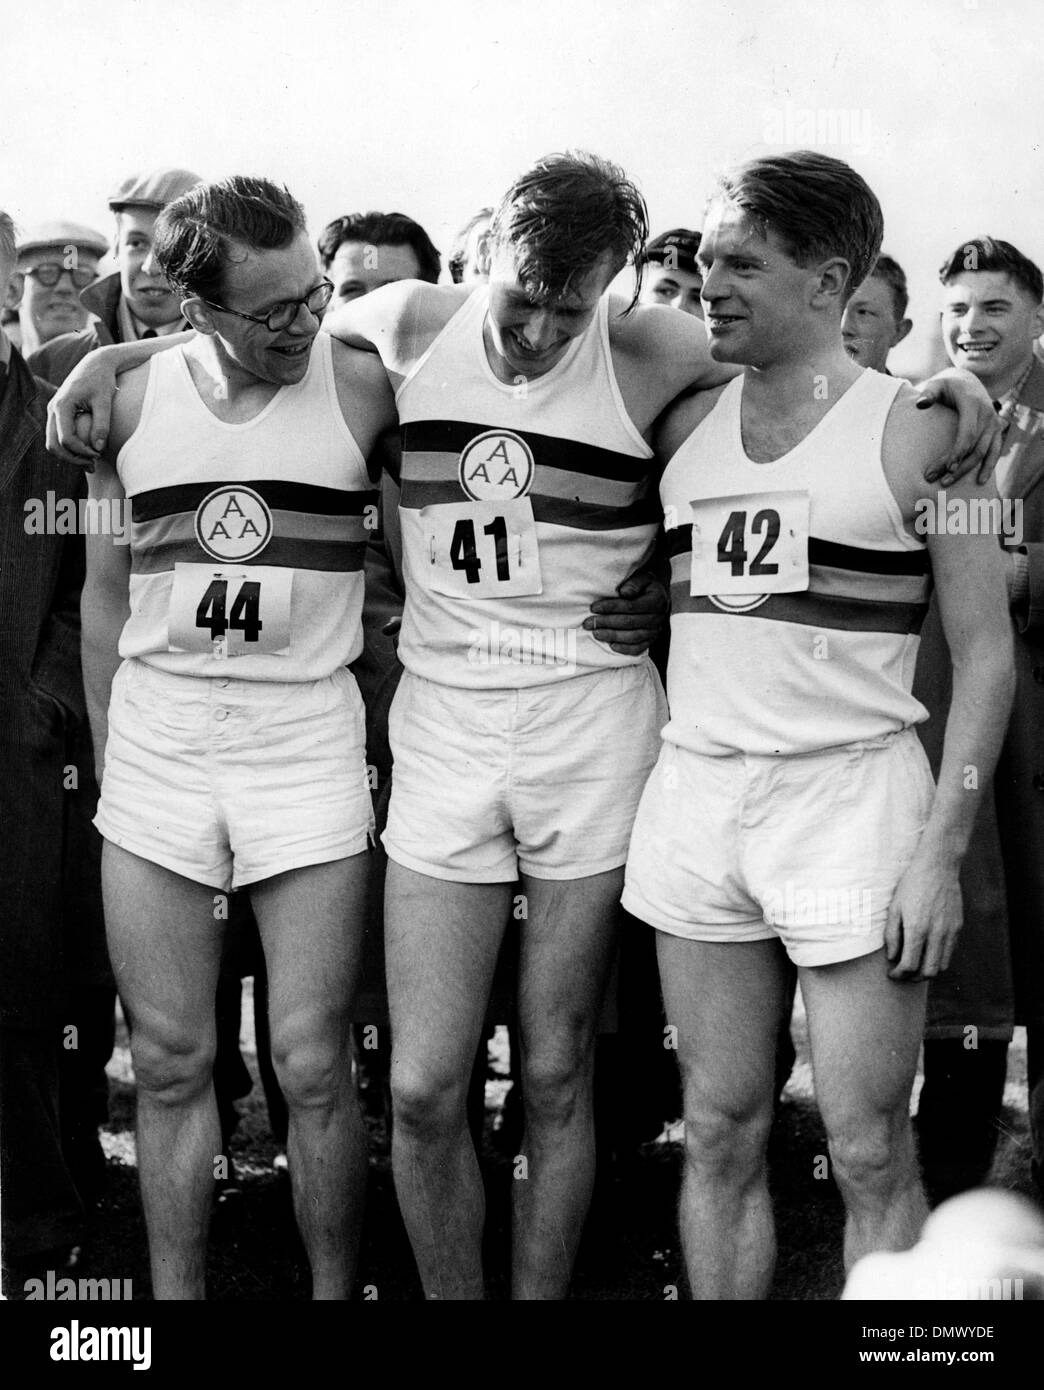 7 maggio 1954 - Oxford, England, Regno Unito - La Gran Bretagna è Roger Bannister ha fatto. La scorsa notte ha corso la favolosa quattro minuti per miglio, una prodezza che il mondo gli atleti hanno cercato di raggiungere per anni. Il suo tempo è stato tre minuti 59,4 secondi. Nella foto: Roger portando la sua pace maker, CHRISTOPHER DISTRUTTORI (L) e Christopher CHATAWAY, nell'immagine. (Credito Immagine: © Keystone foto Foto Stock